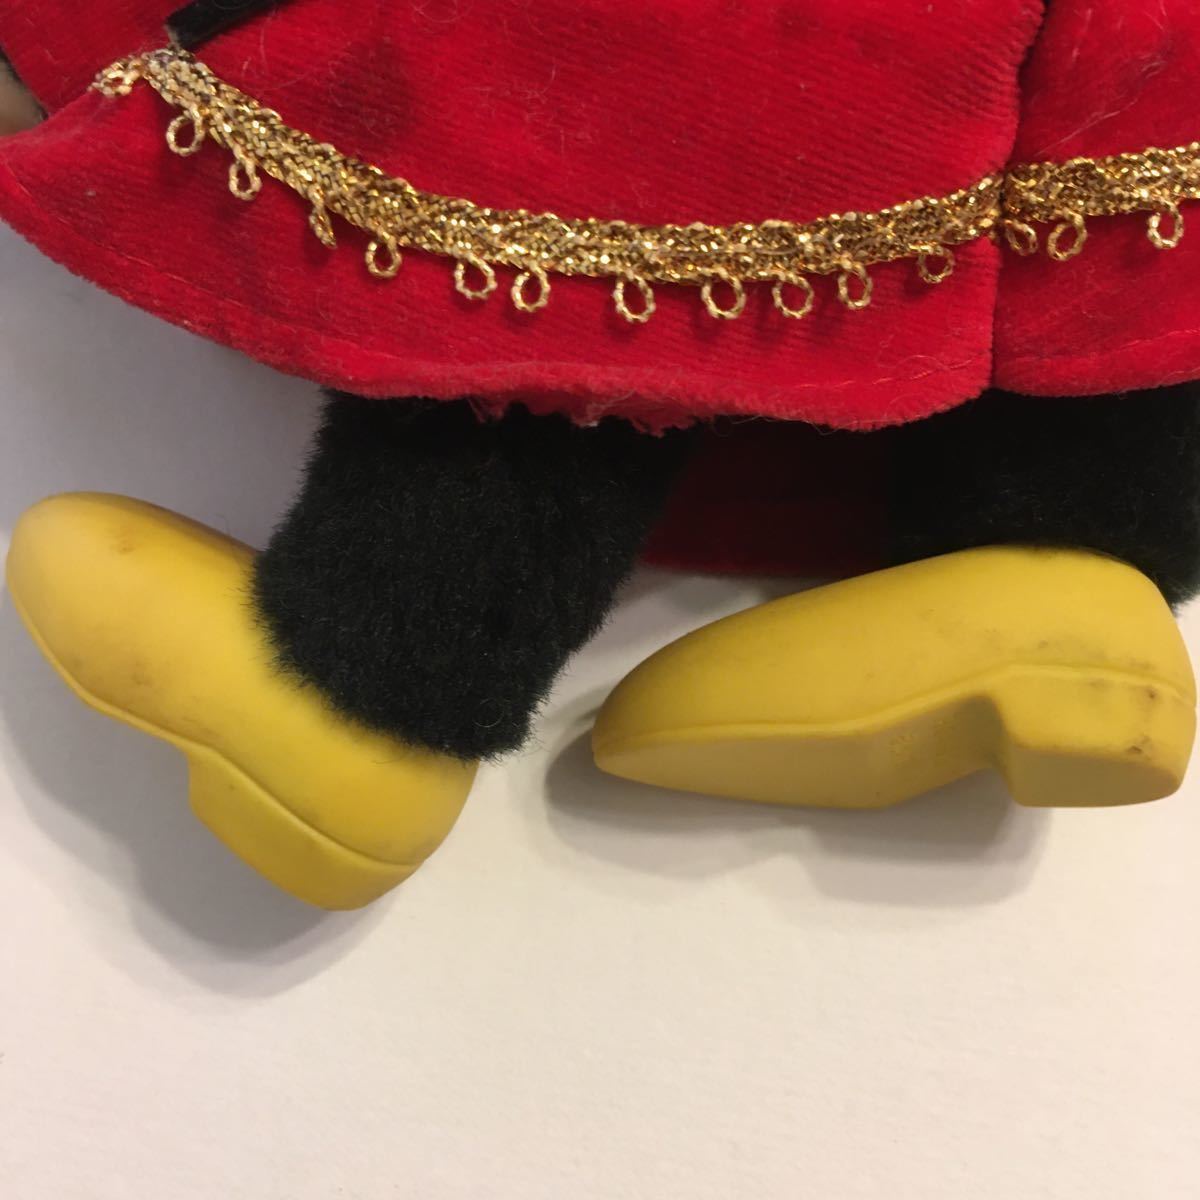 ビンテージ ヤングエポックミッキー ミニー セットTokyo Disneyland Young Epoch Mickey Minnie set. Made in Japan. Vintage.